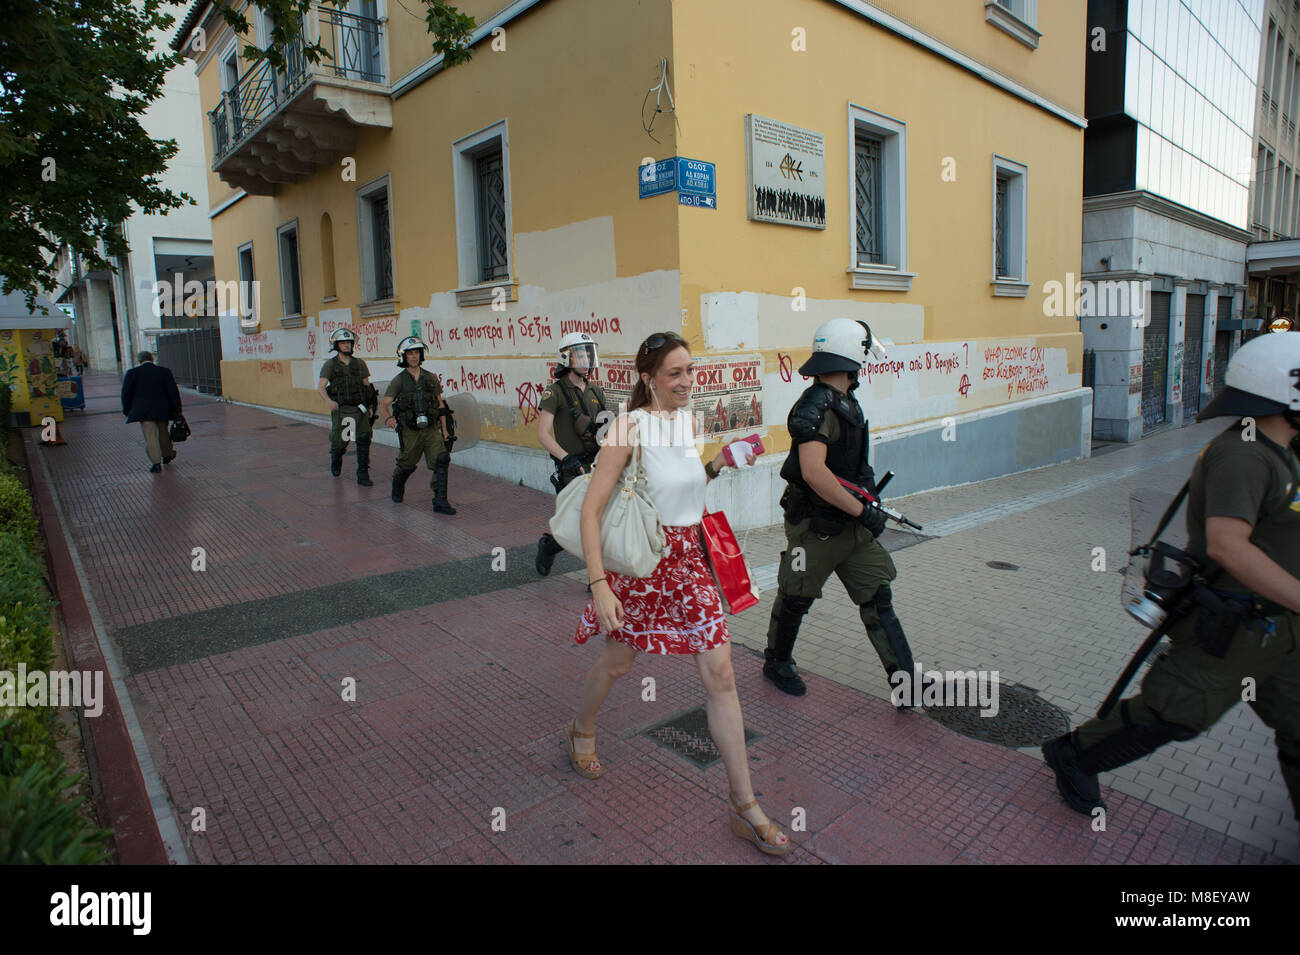 Athènes. La police lors d'un référendum de rallye Antarsya branche politique. La Grèce. Banque D'Images